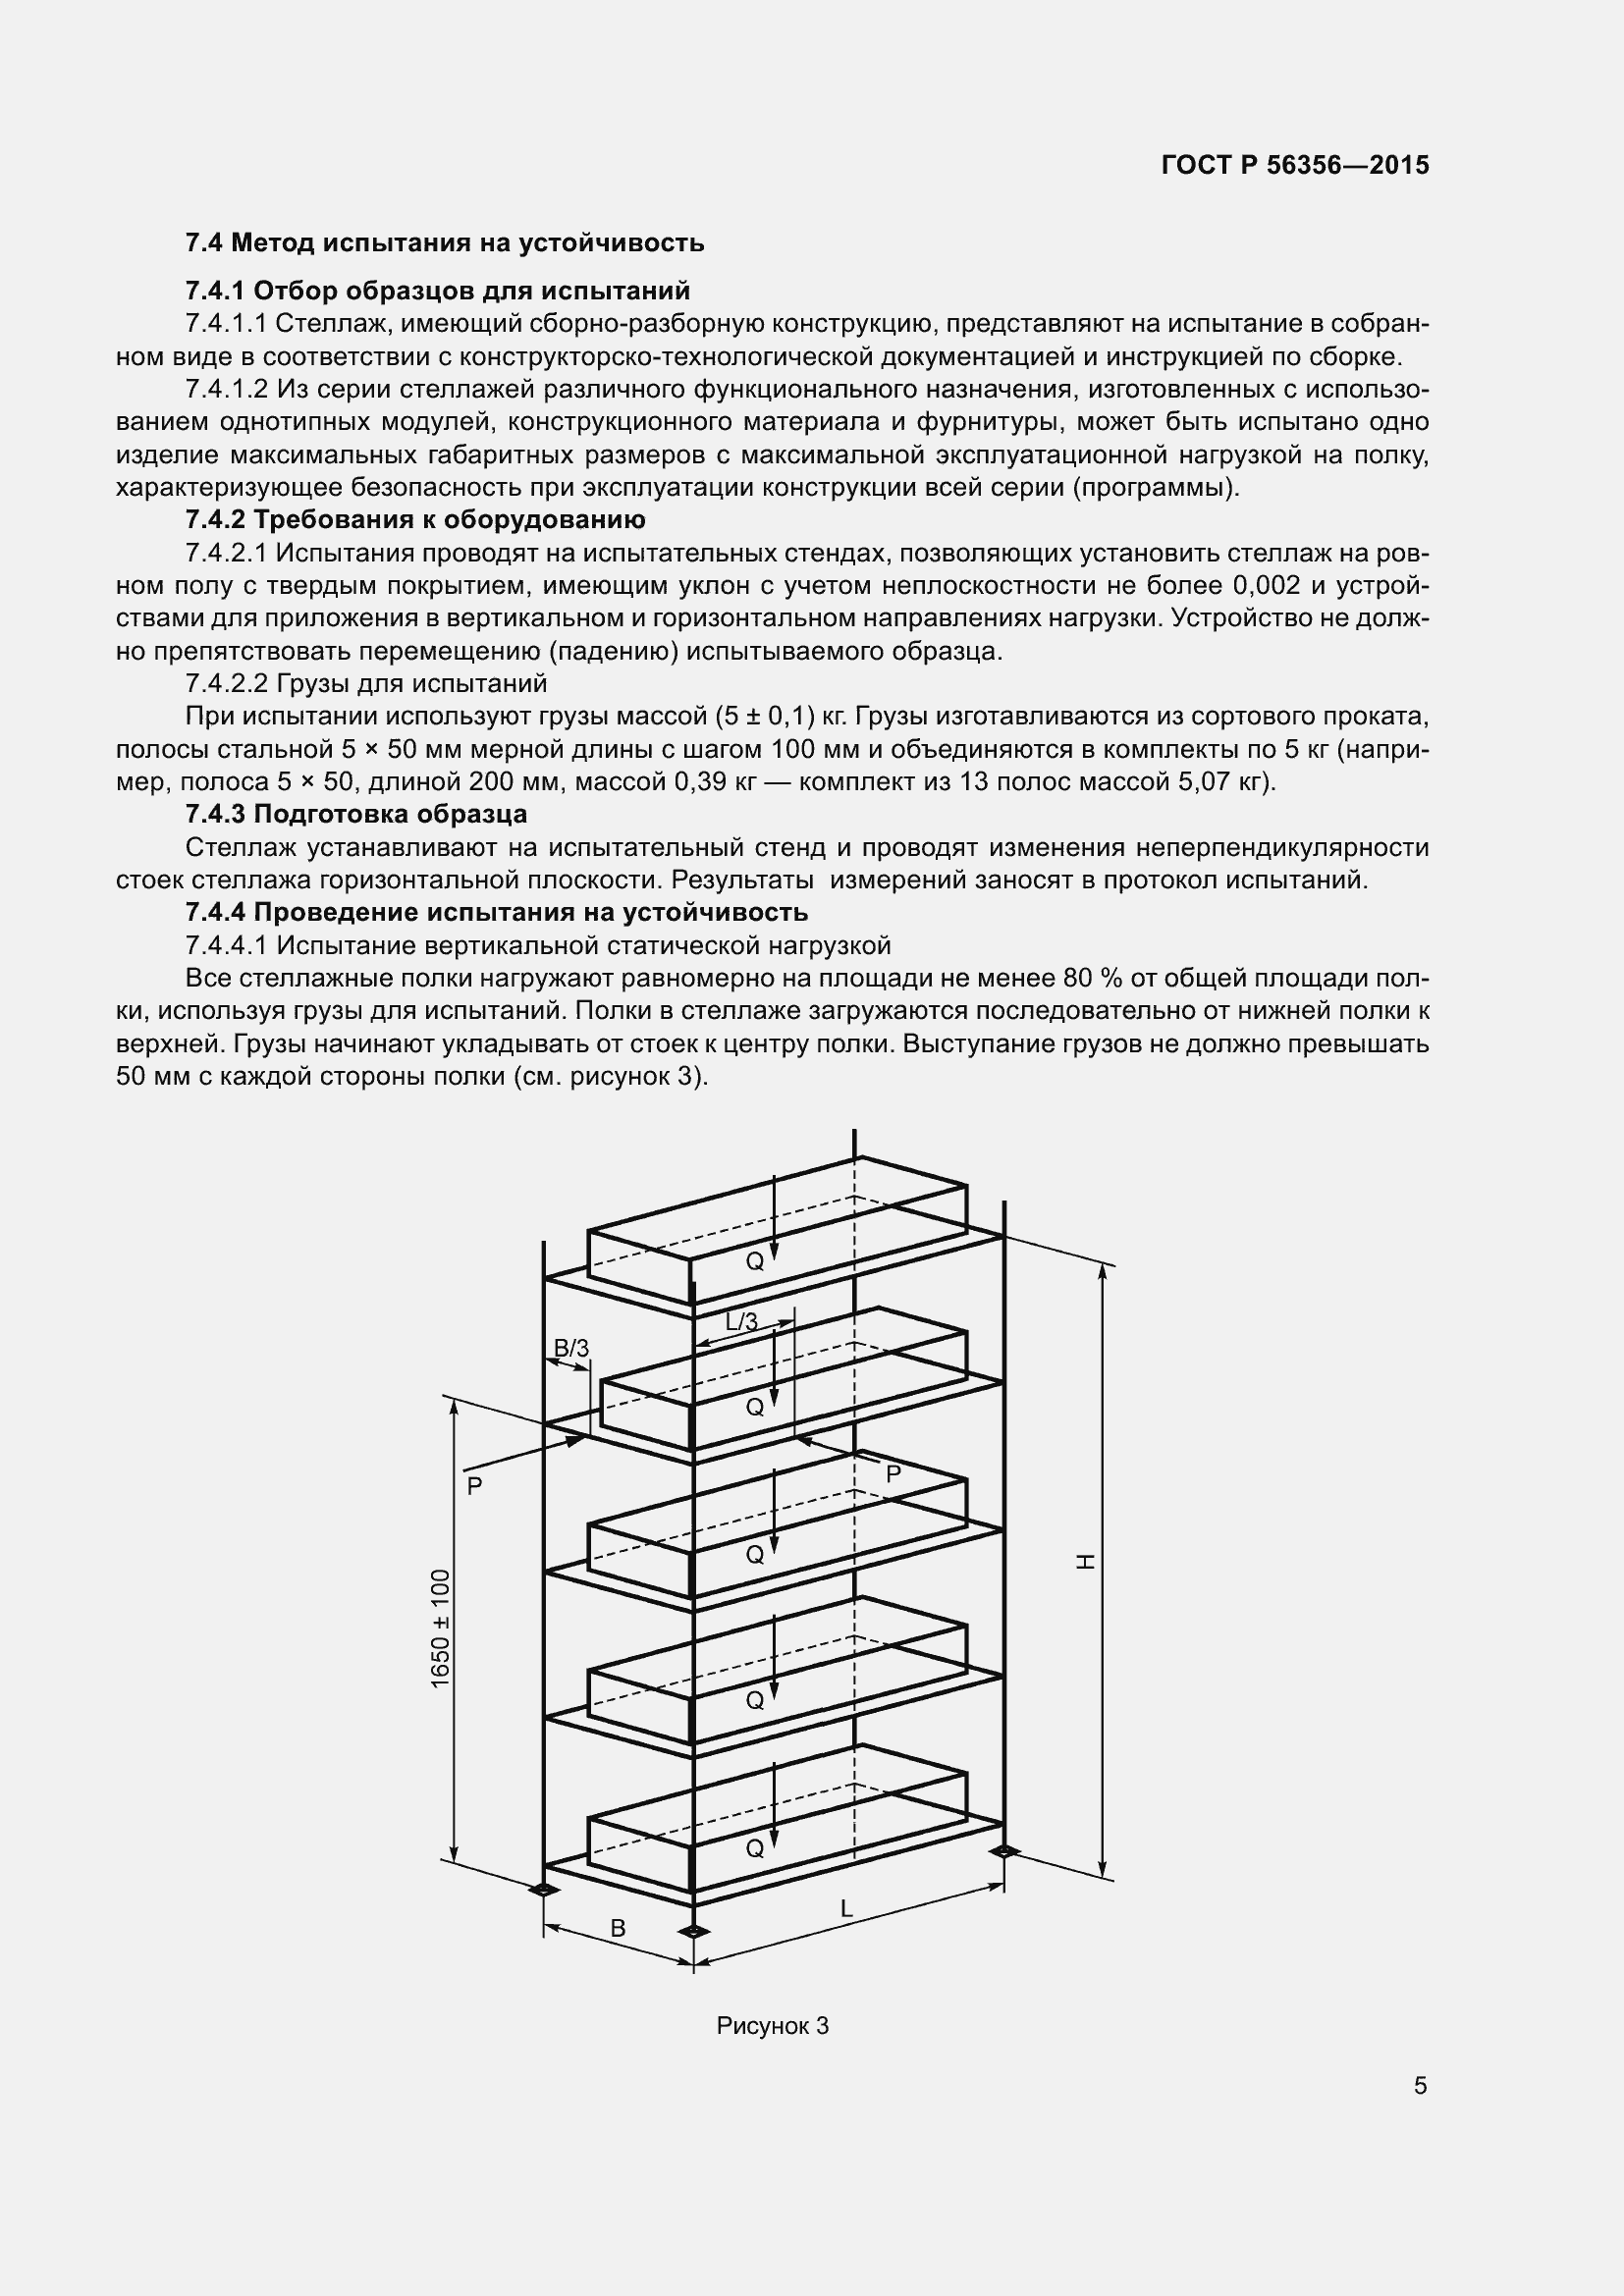 Пример актов испытания стеллажей. Стеллаж металлический (ГОСТ 20400-2013). Статические испытания стеллажей вертикальной нагрузкой.